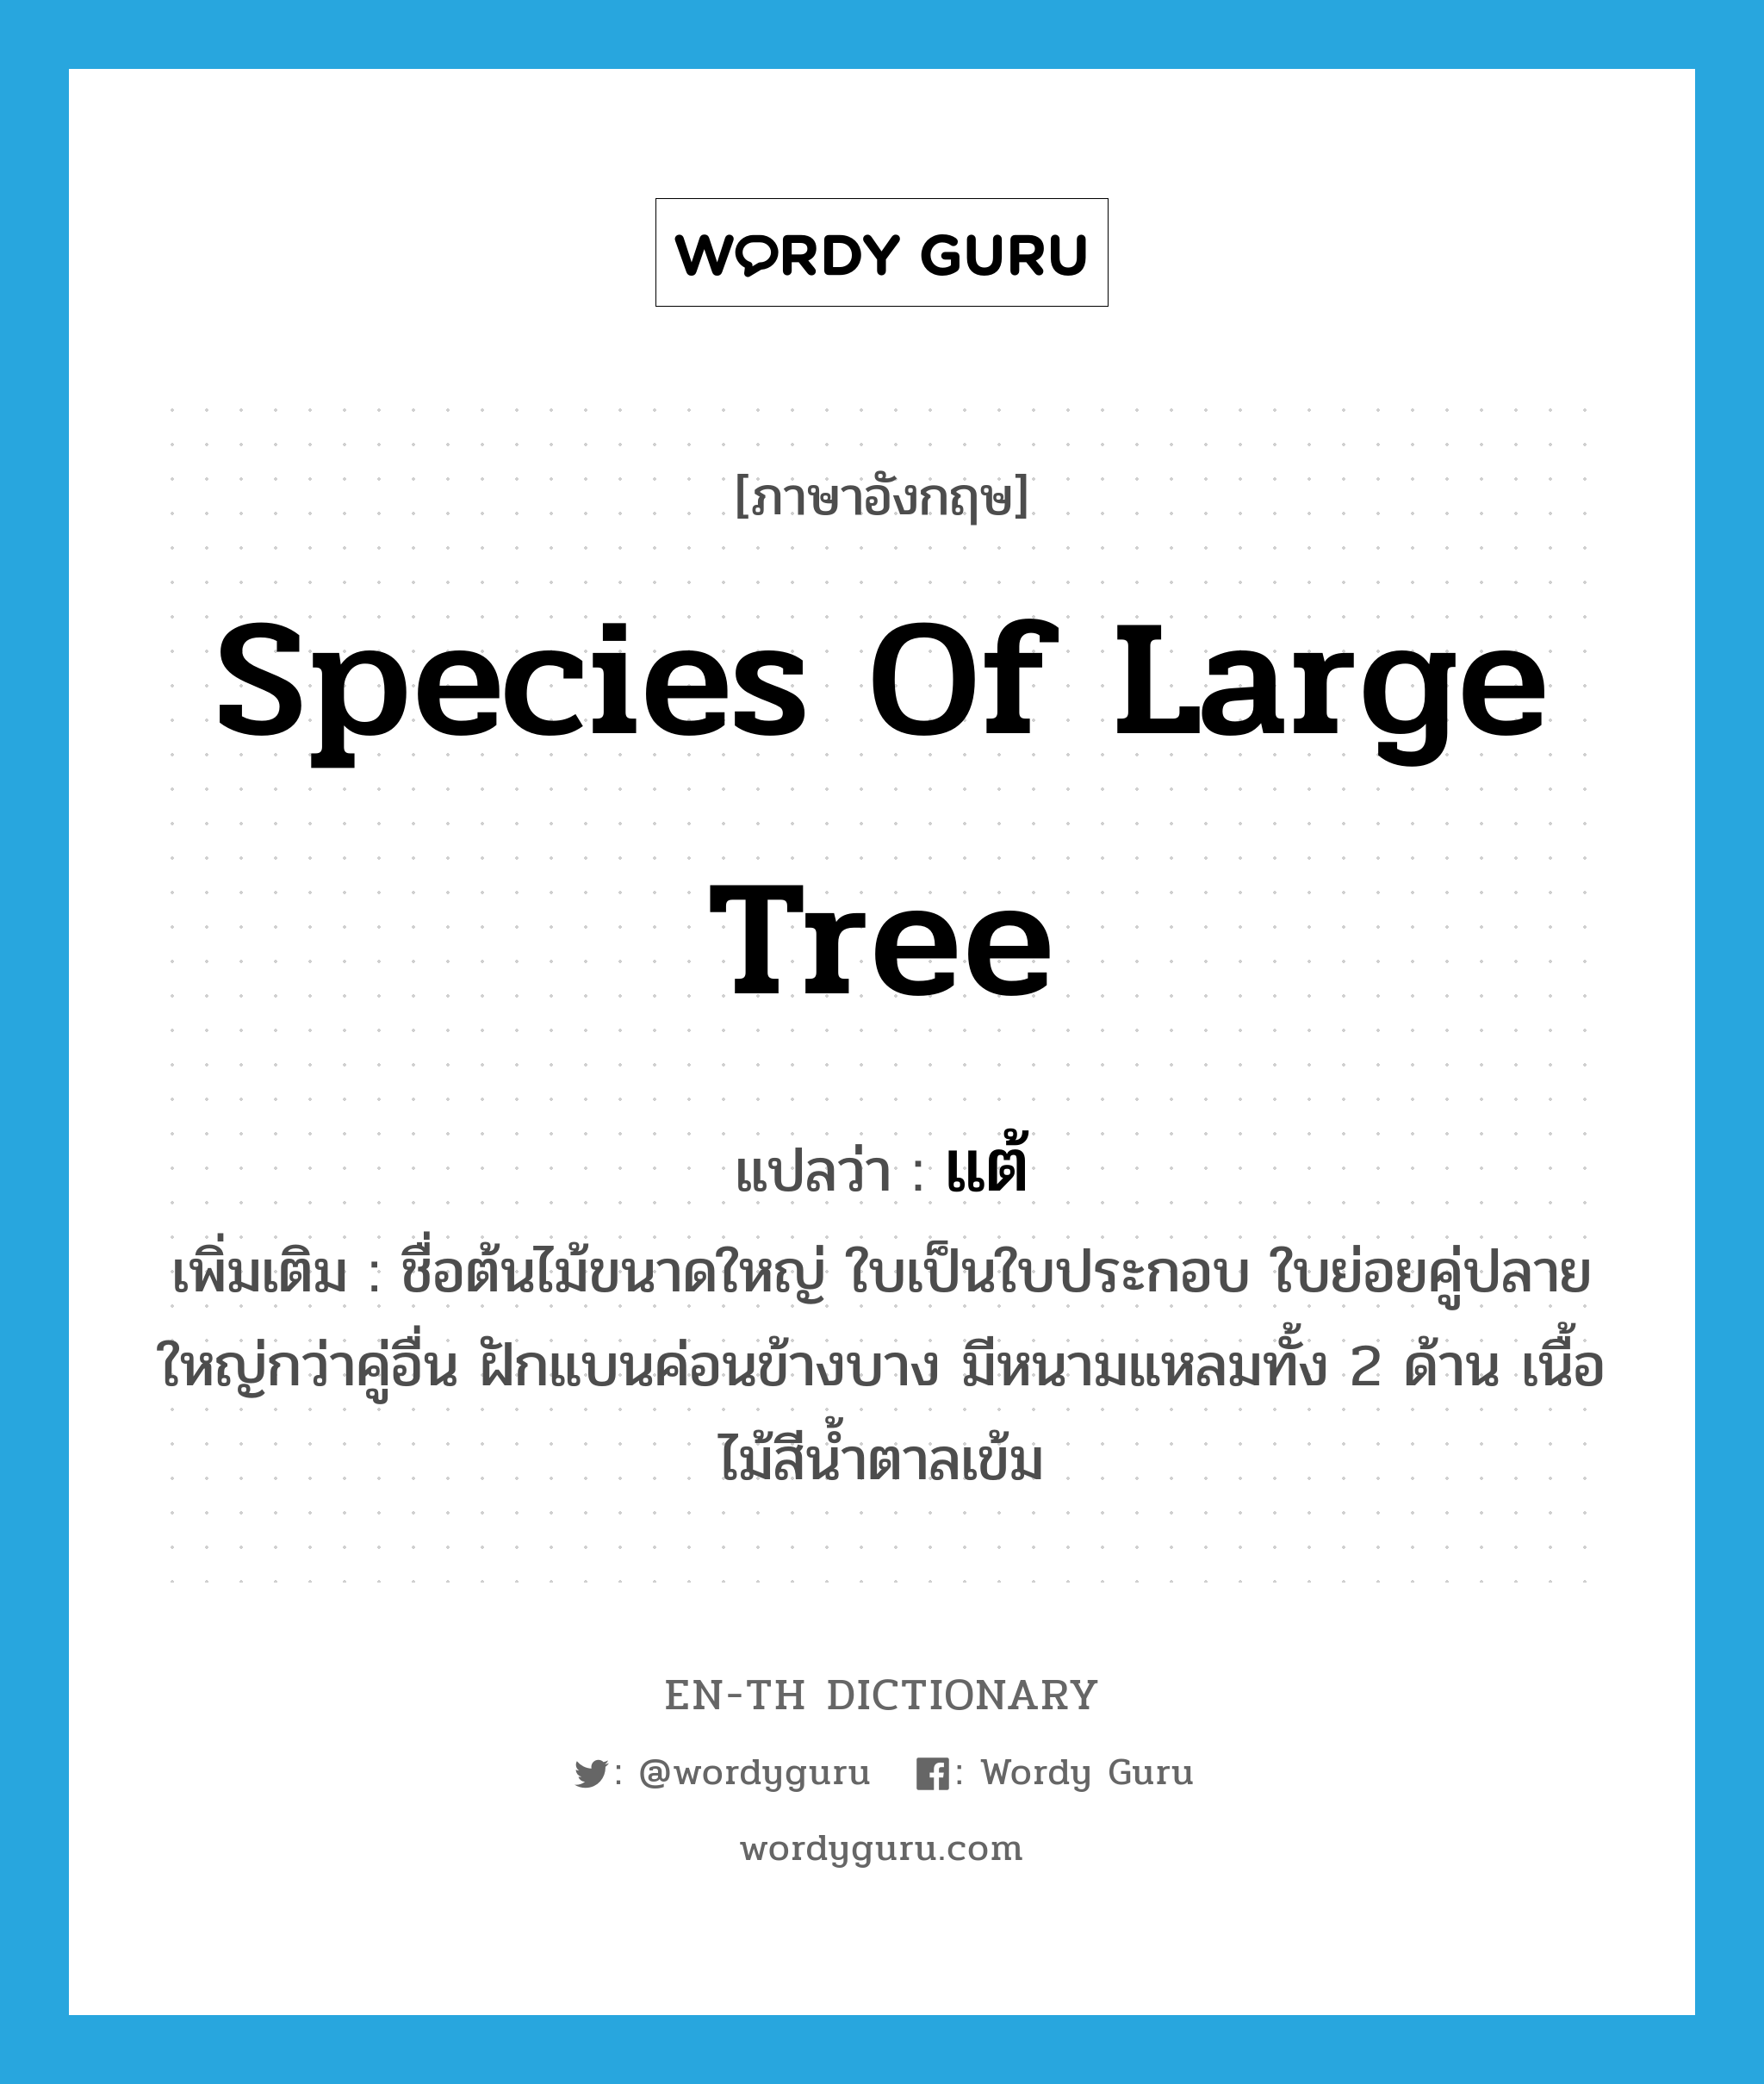 species of large tree แปลว่า?, คำศัพท์ภาษาอังกฤษ species of large tree แปลว่า แต้ ประเภท N เพิ่มเติม ชื่อต้นไม้ขนาดใหญ่ ใบเป็นใบประกอบ ใบย่อยคู่ปลายใหญ่กว่าคู่อื่น ฝักแบนค่อนข้างบาง มีหนามแหลมทั้ง 2 ด้าน เนื้อไม้สีน้ำตาลเข้ม หมวด N